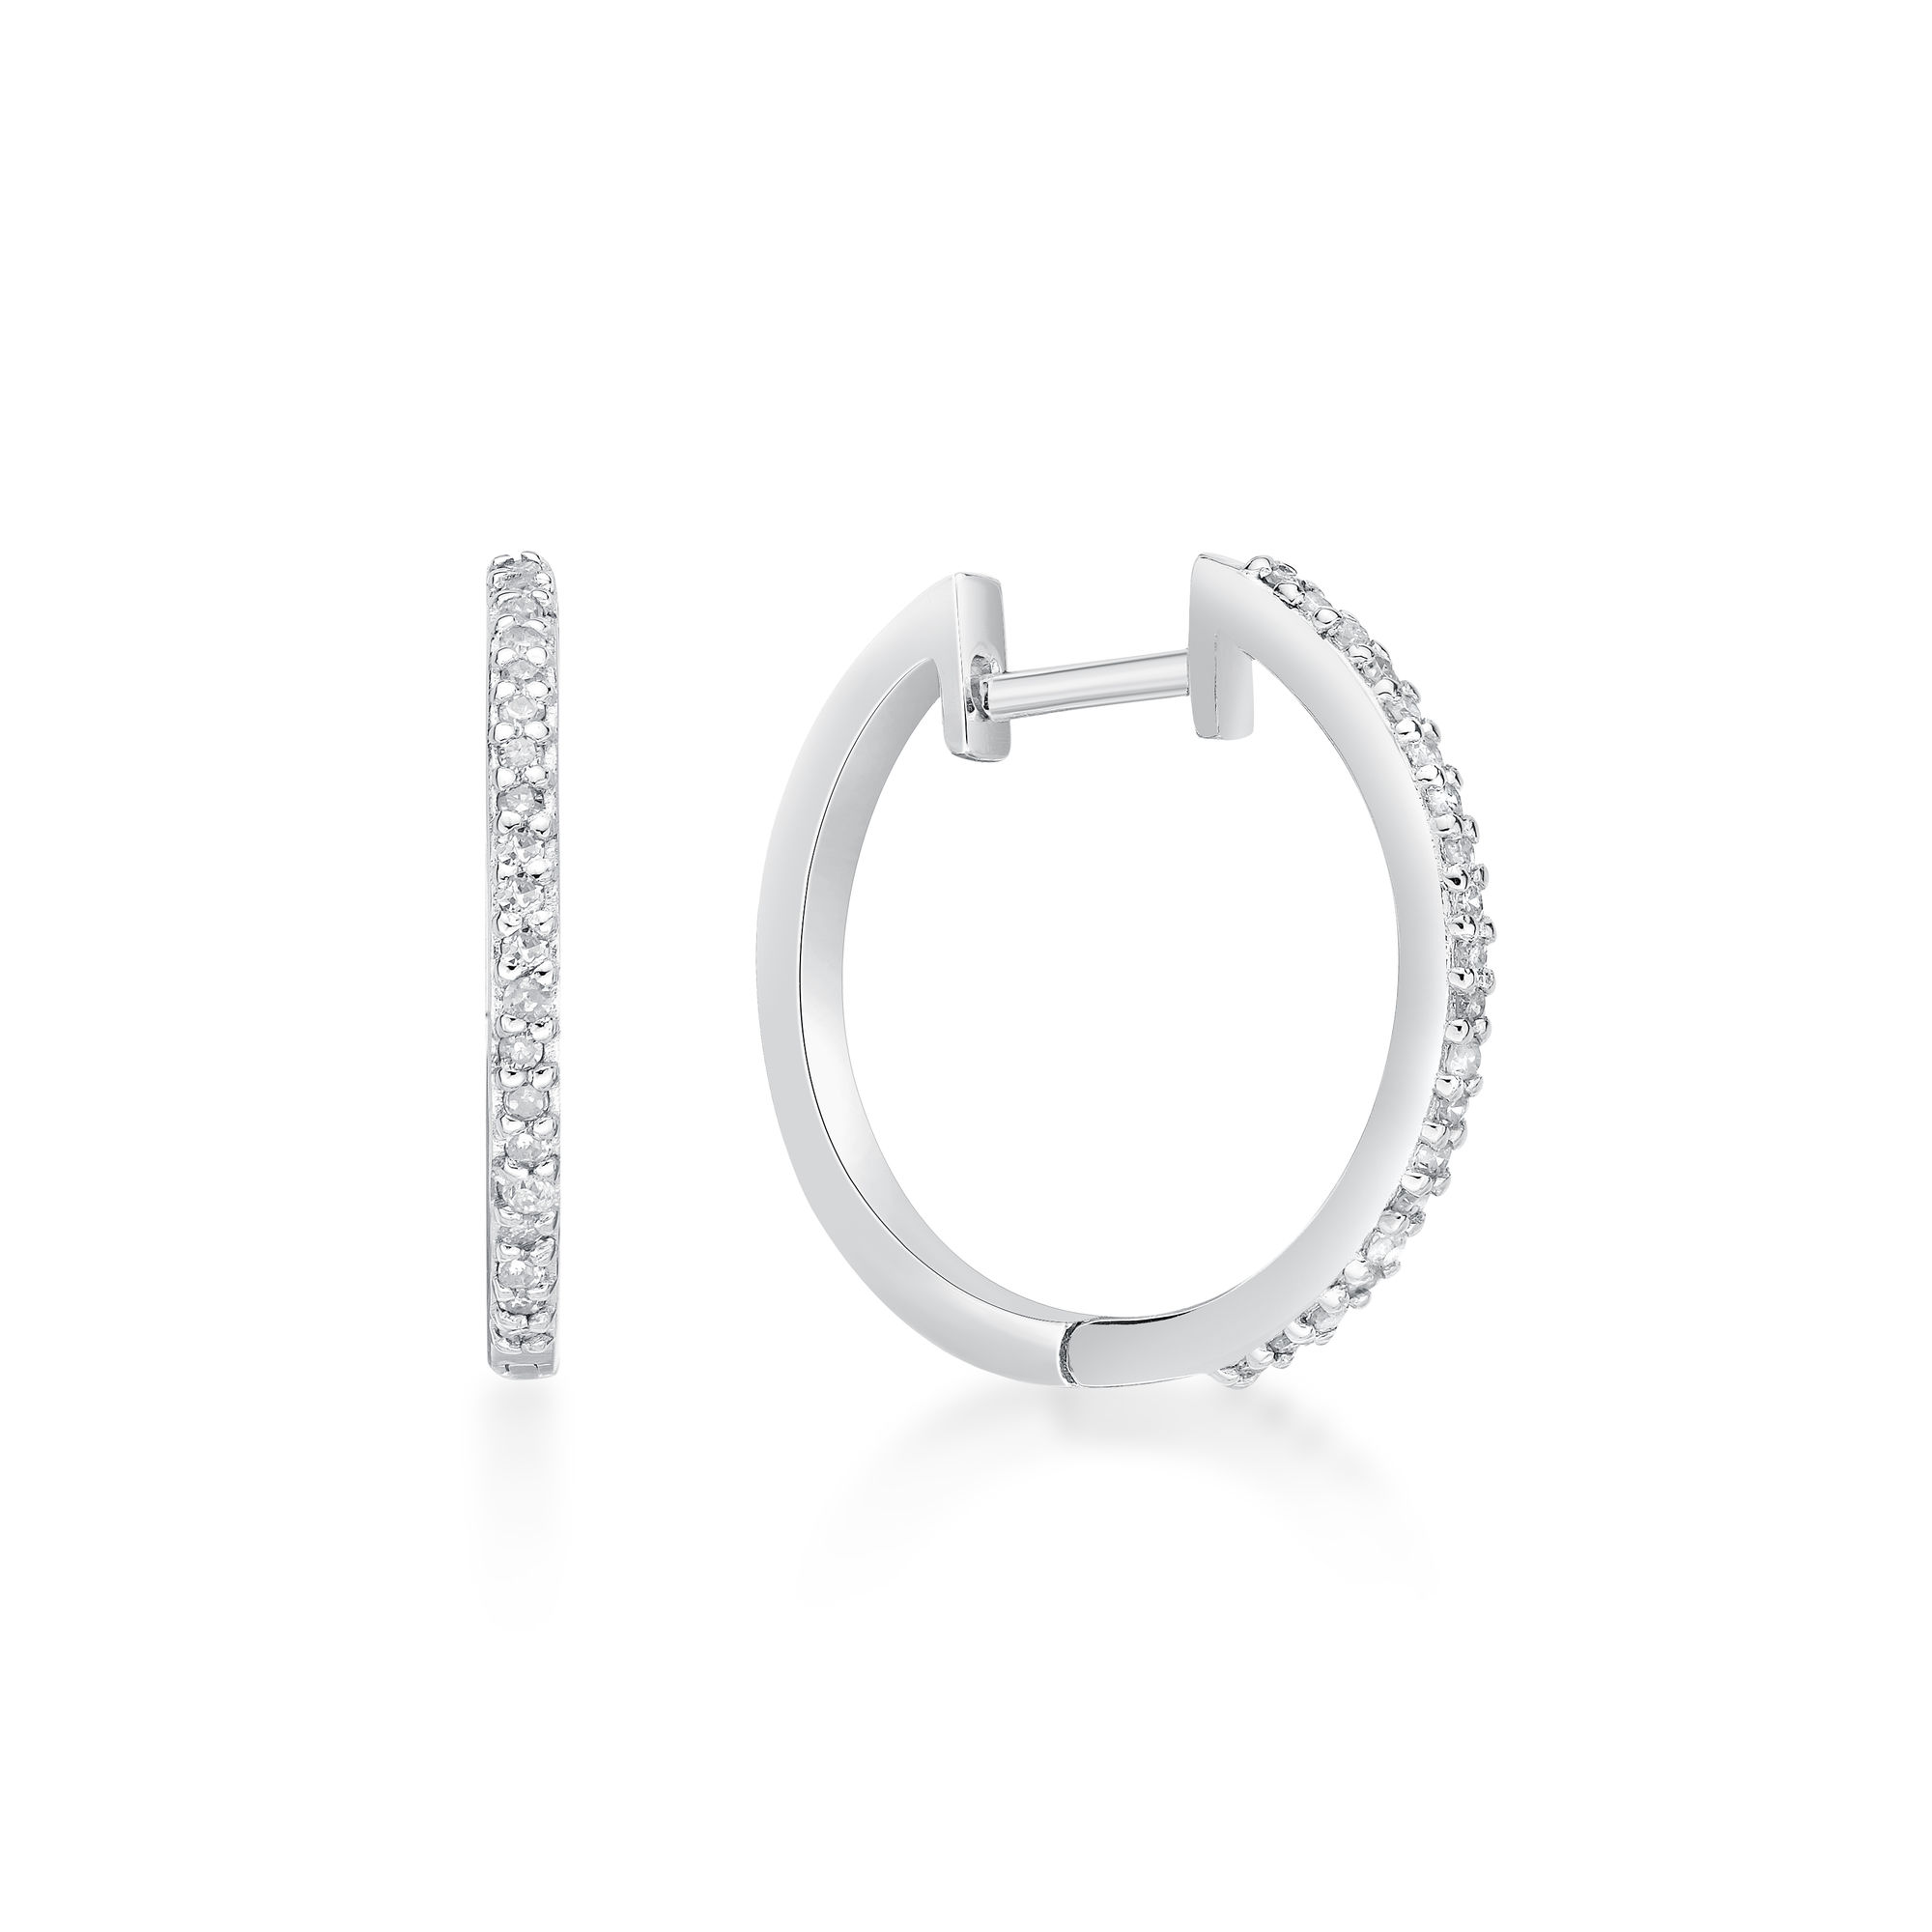 49065-earrings-fashion-diamond-sterling-silver-49065.jpg